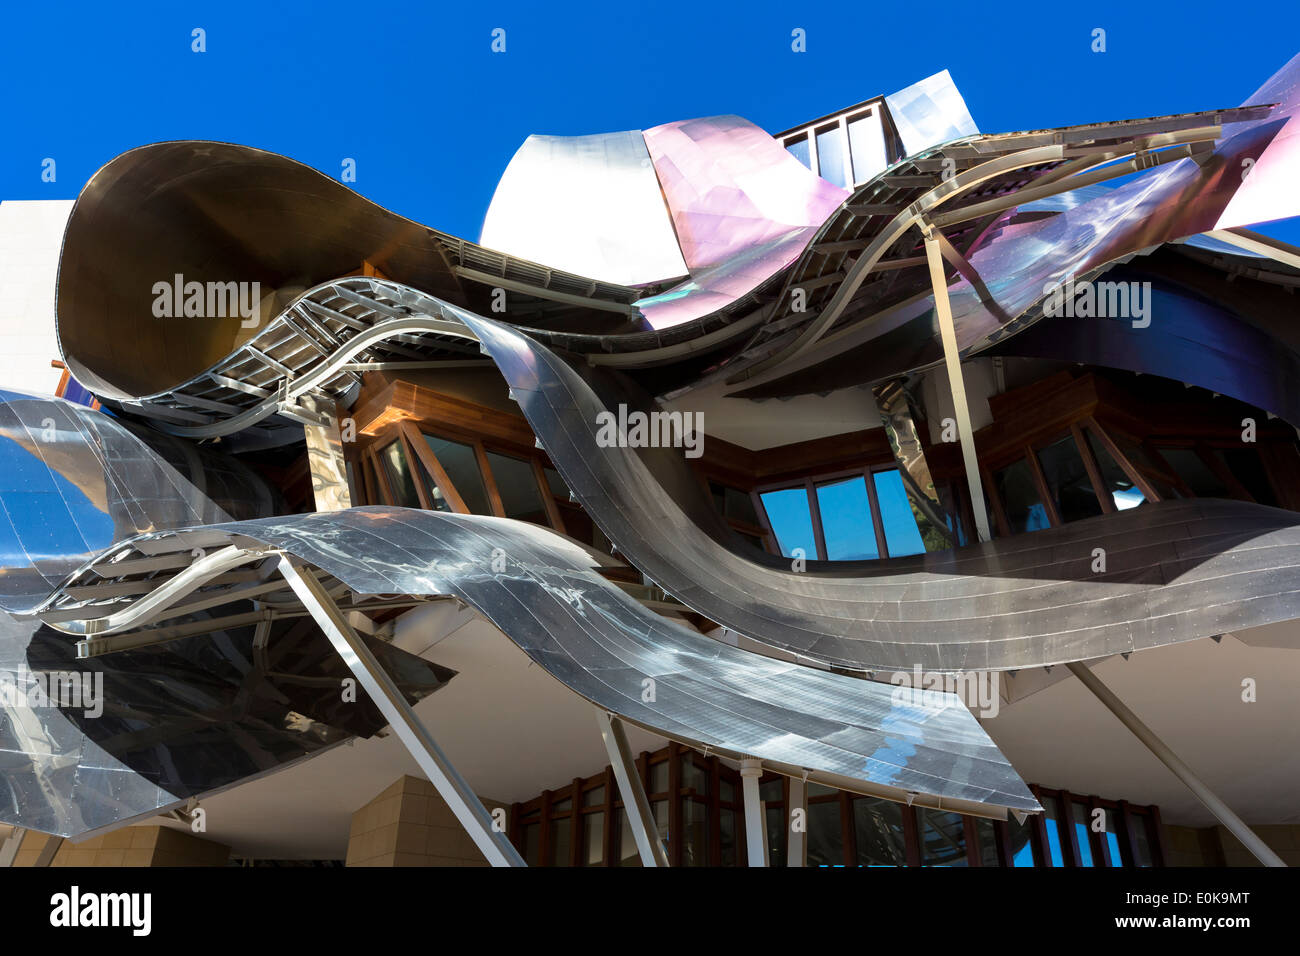 Hotel Marques de Riscal Bodega, futuristisch geschwungenen Design von dem Architekten Frank o Gehry, in elciego in Rioja Alavesa Bereich von Spanien Stockfoto